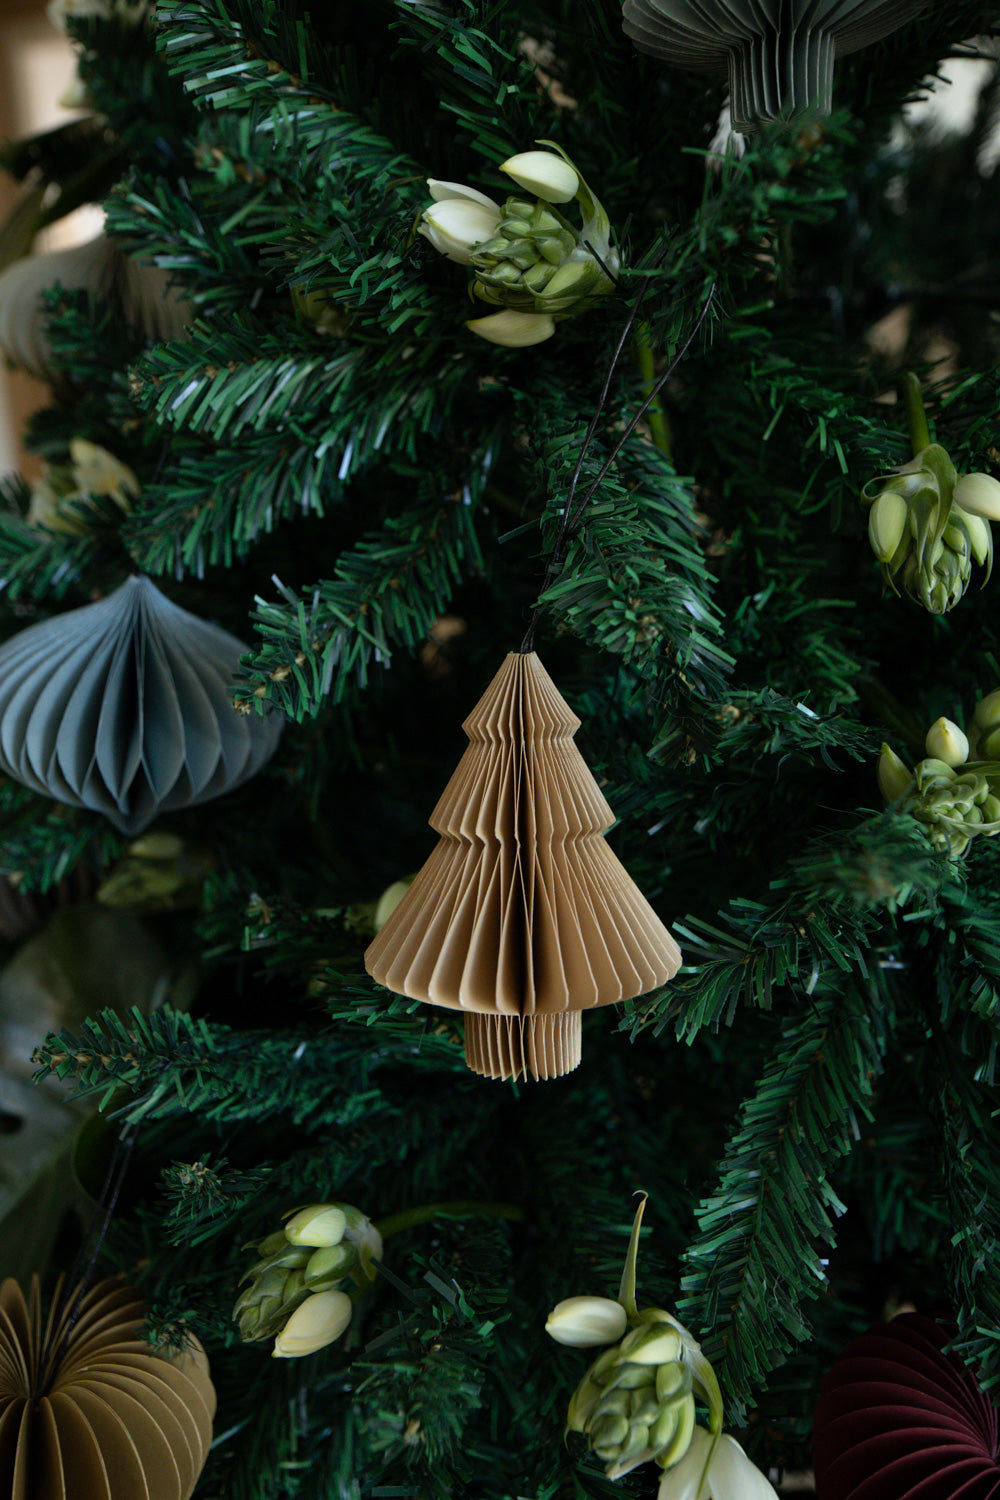 Flaxseed Tree Paper Ornament